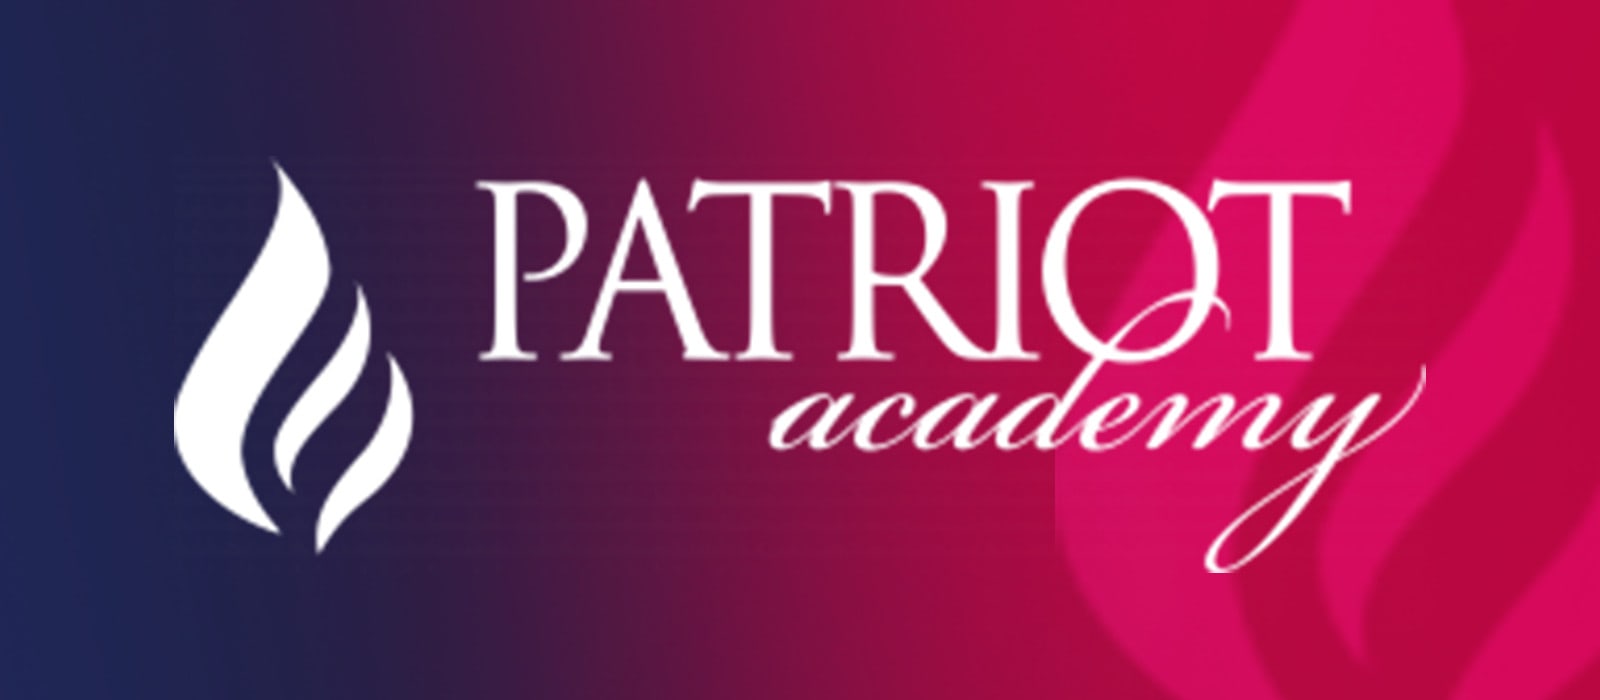 Patriot Academy Thumbnail